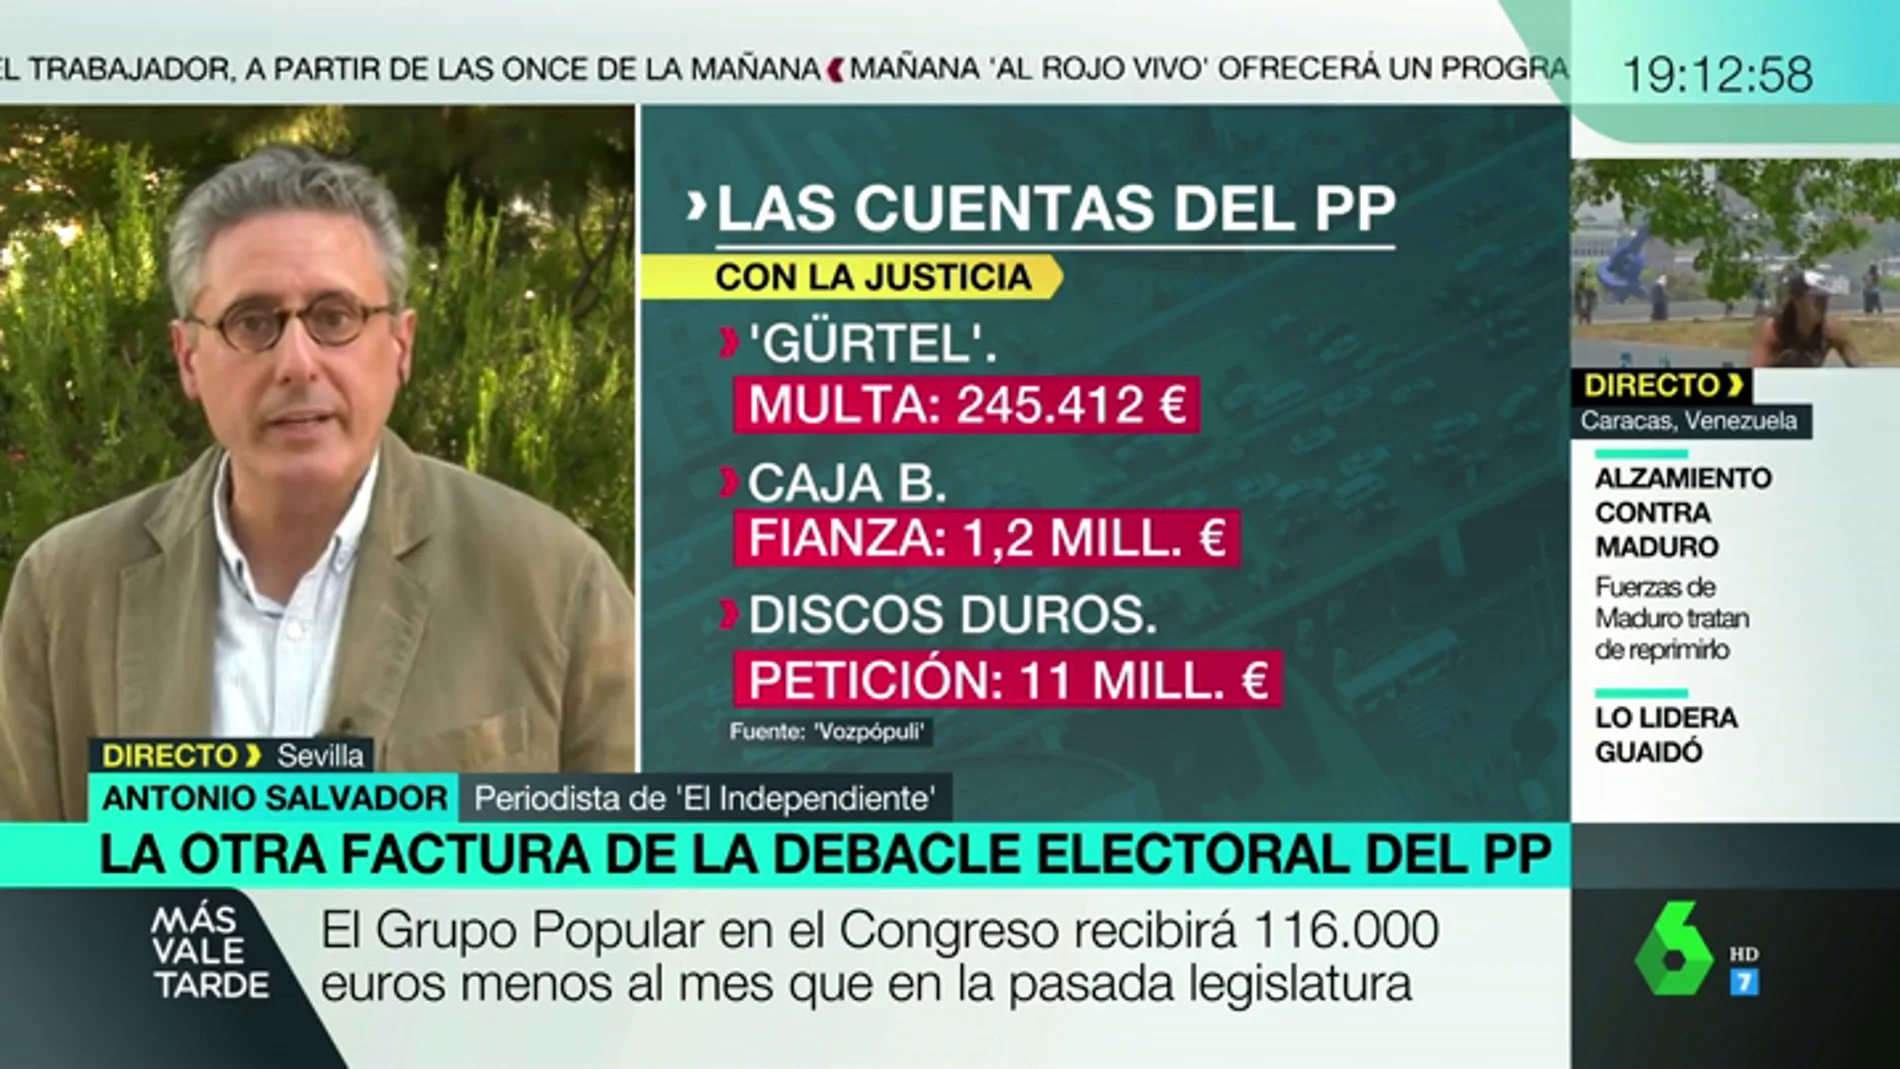 Antonio Salvador: "El PP podría dejar de percibir casi 11 millones de euros"